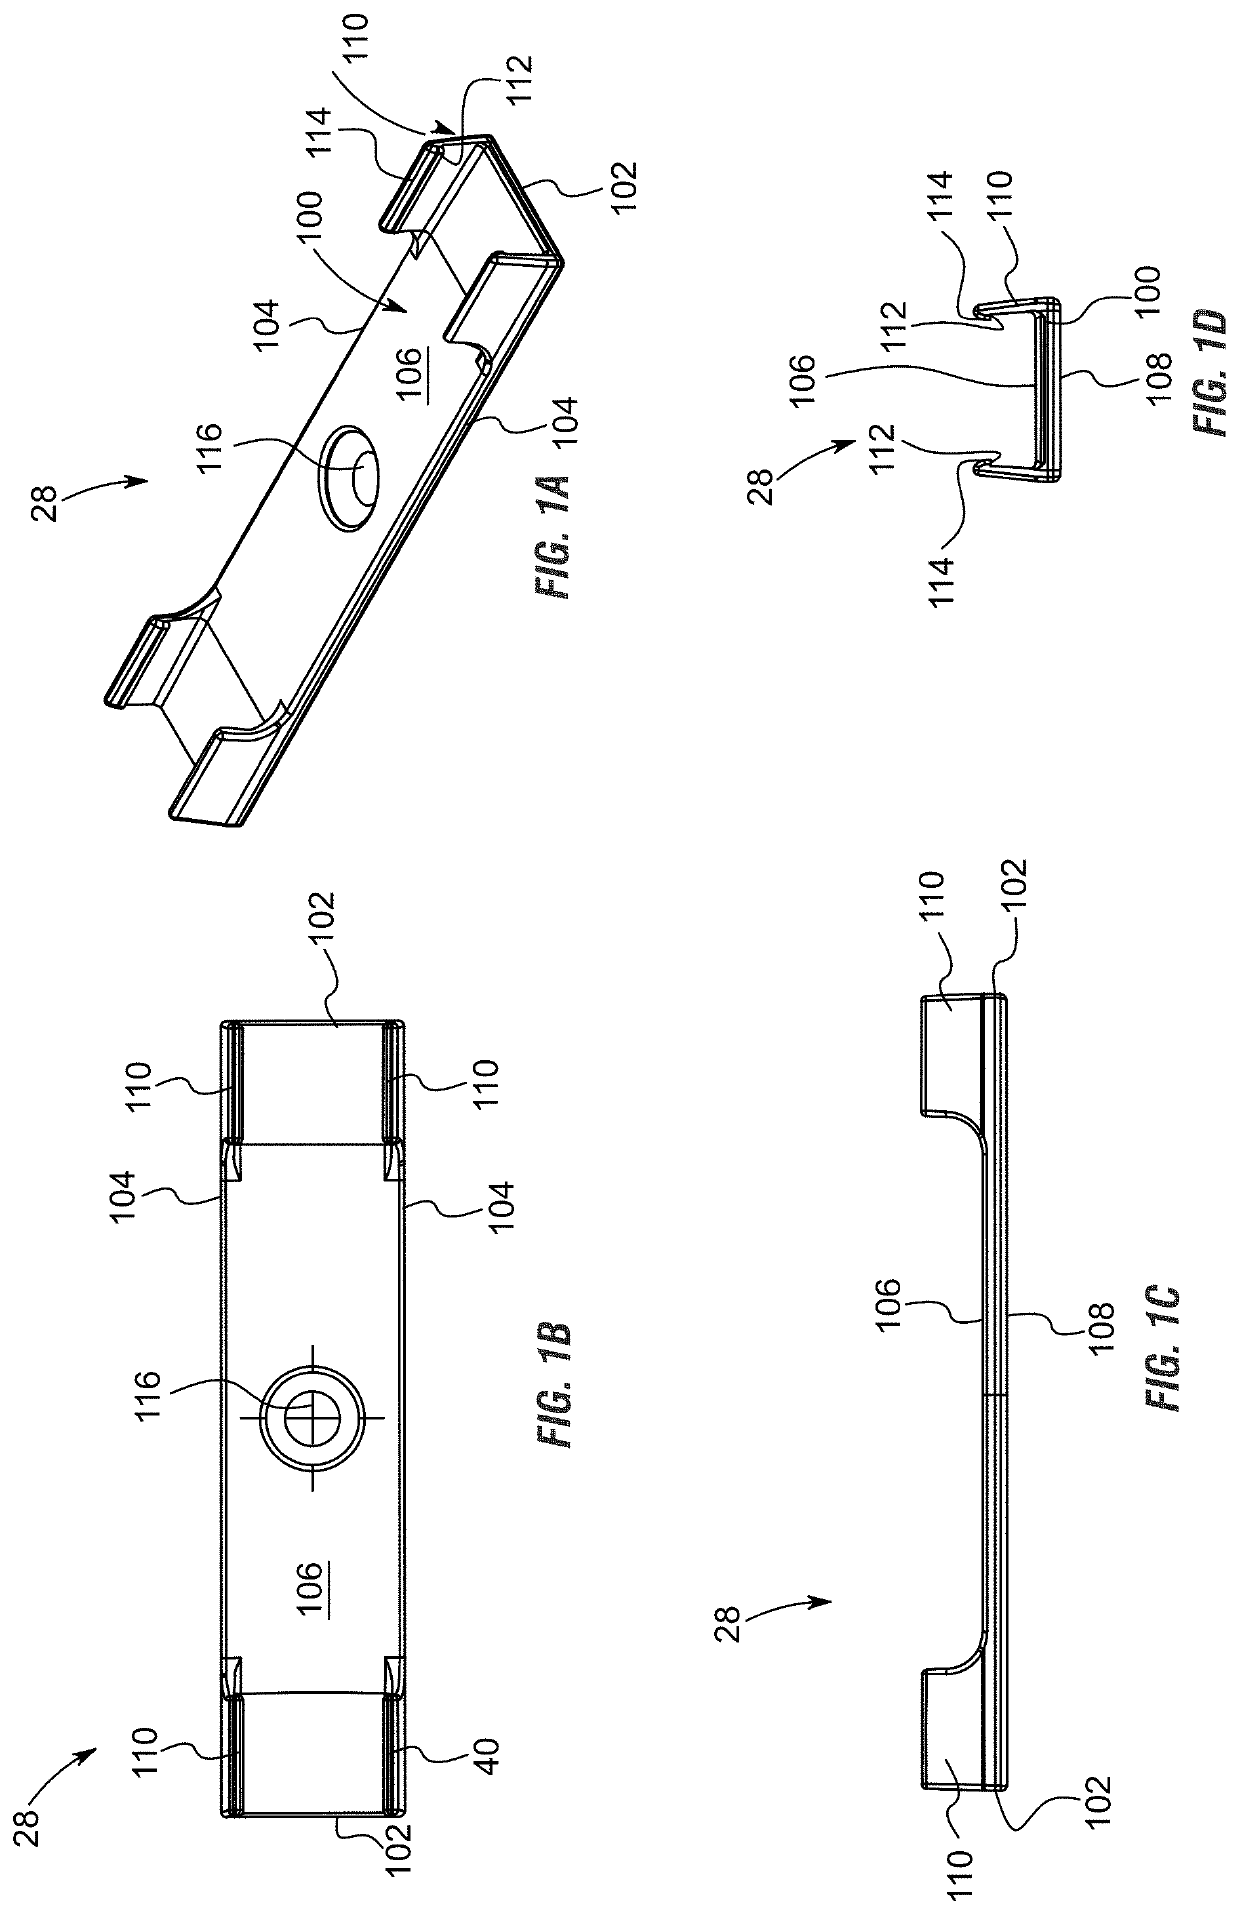 Light bar using surface-mount technology